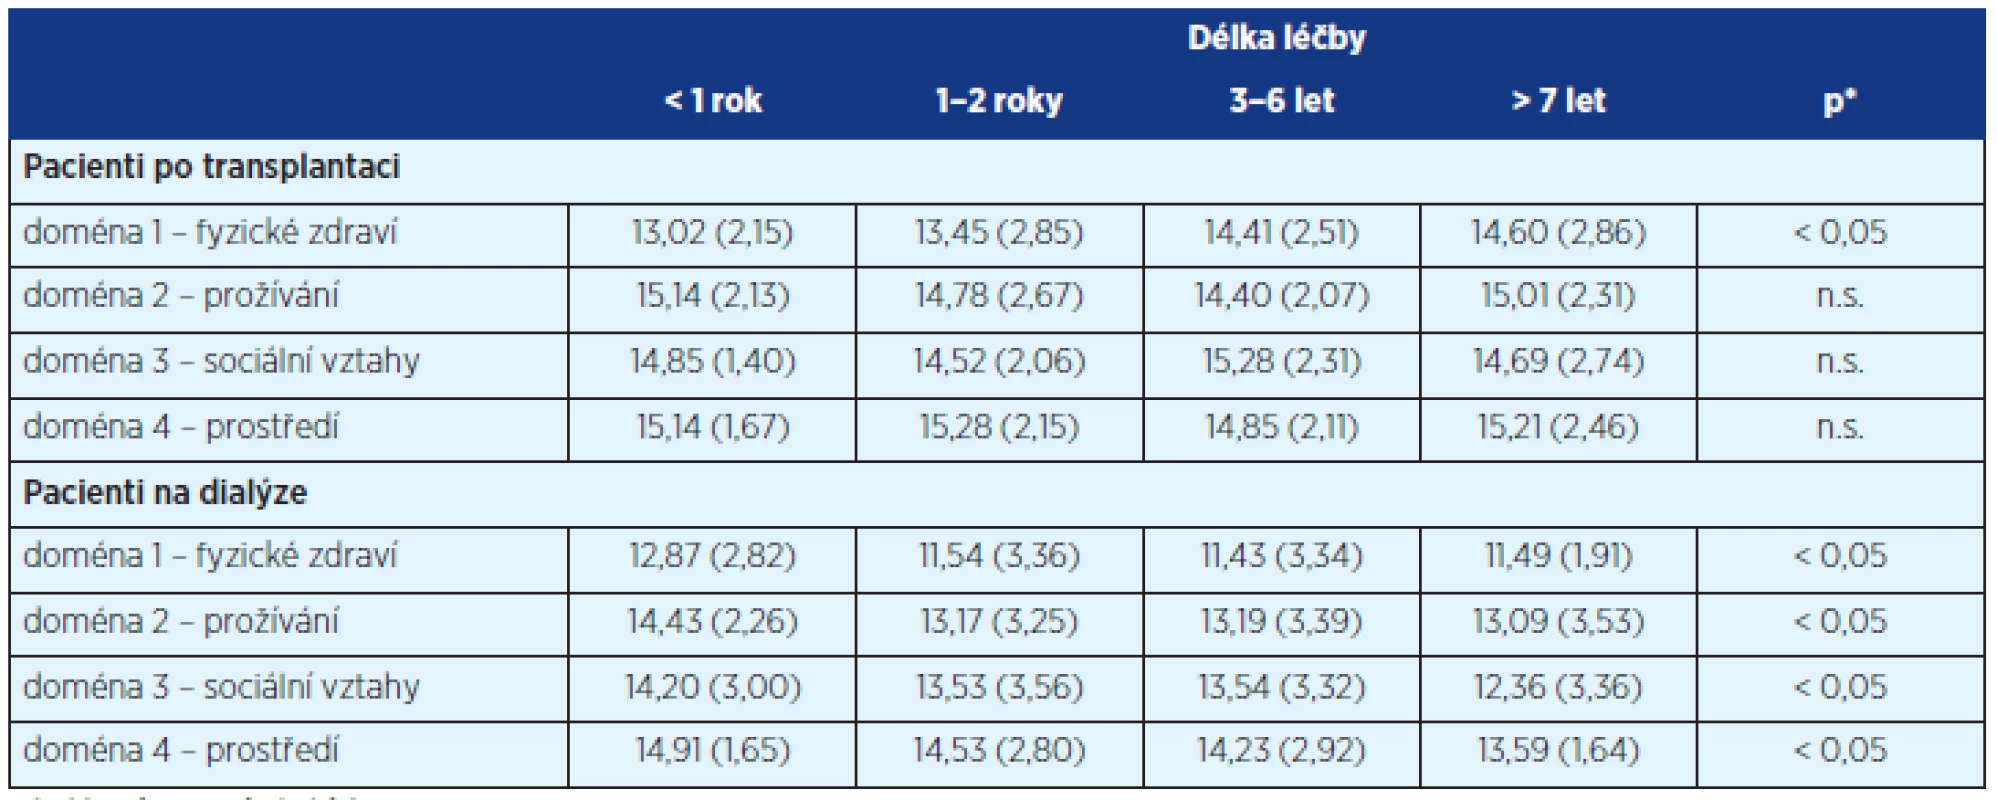 Hodnocení kvality života podle délky od transplantace/dialýzy